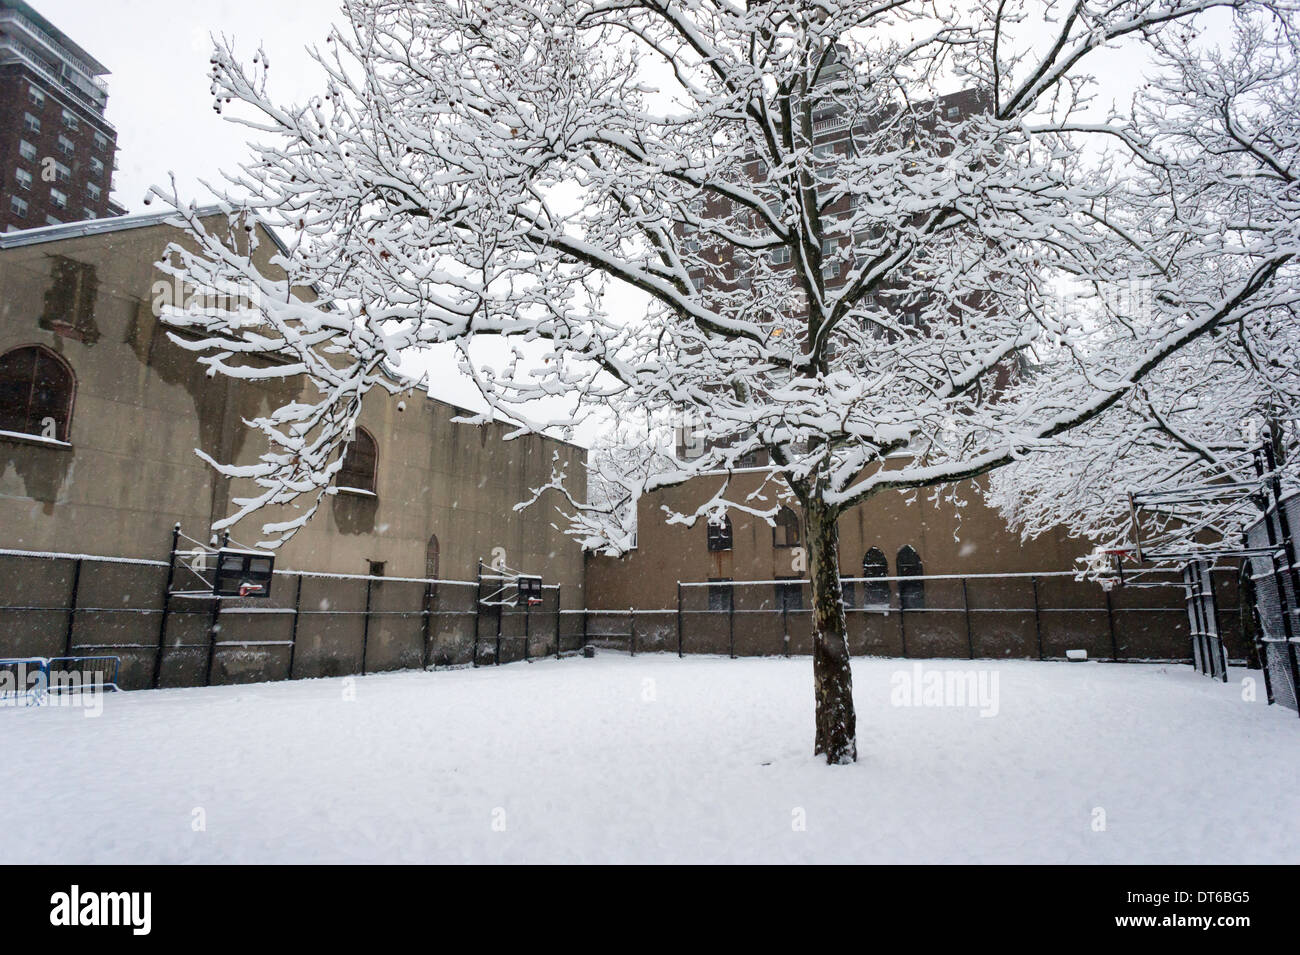 Neige mouillée colle aux branches d'arbres dans le quartier de Chelsea, New York Banque D'Images